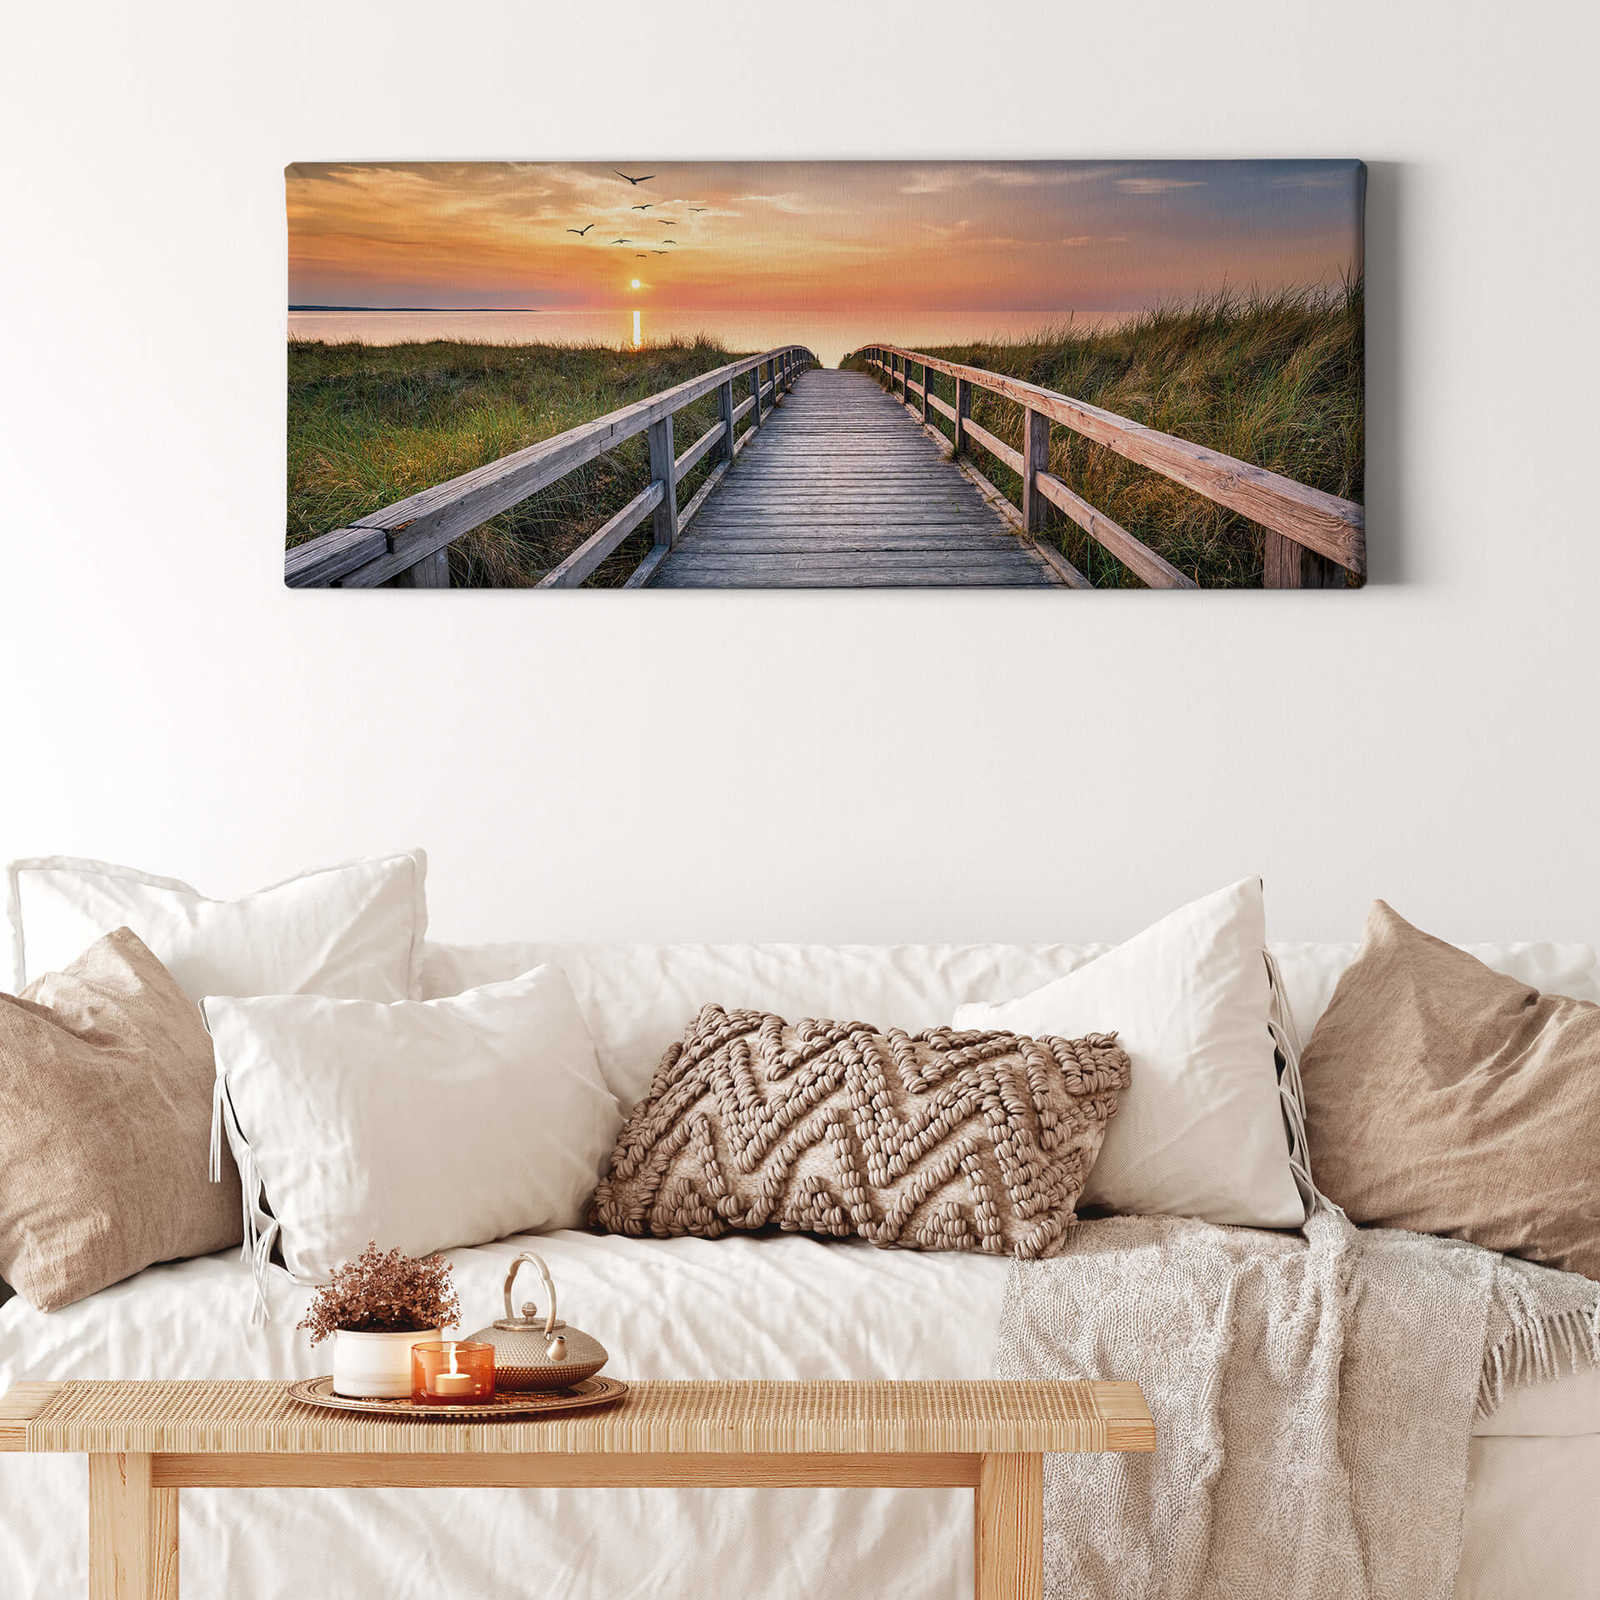             Panorama op canvas van Noordzeeduinen met steiger in verschillende kleuren - 1,00 m x 0,40 m
        